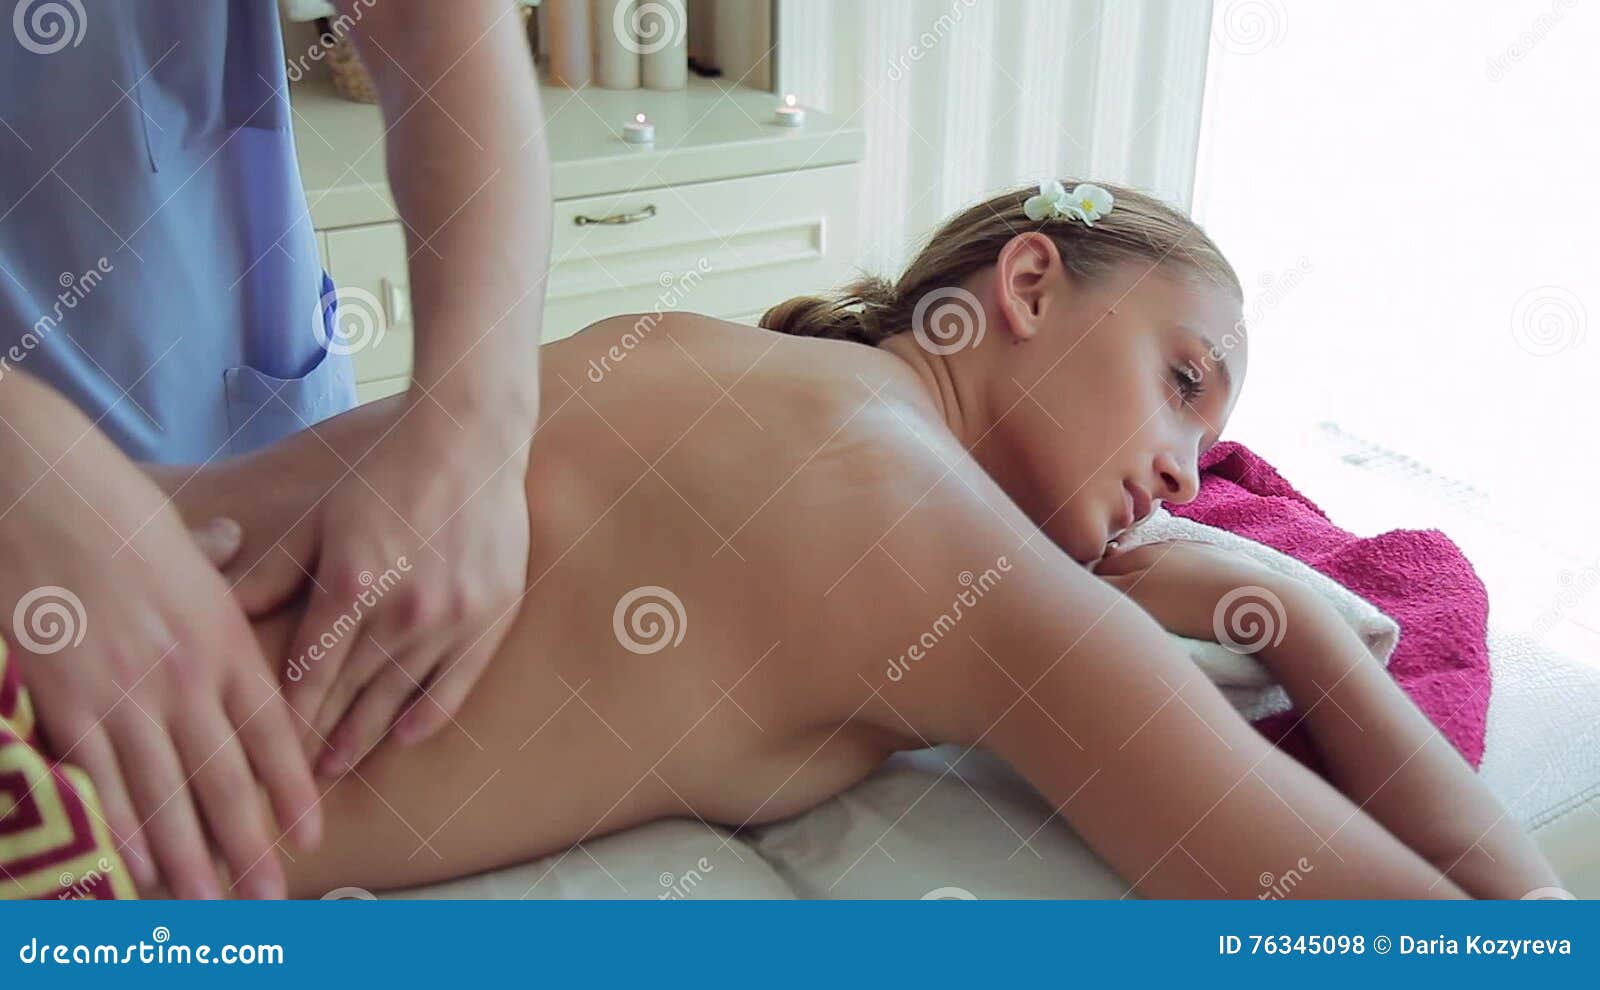 эротика с сестра масаж фото 26